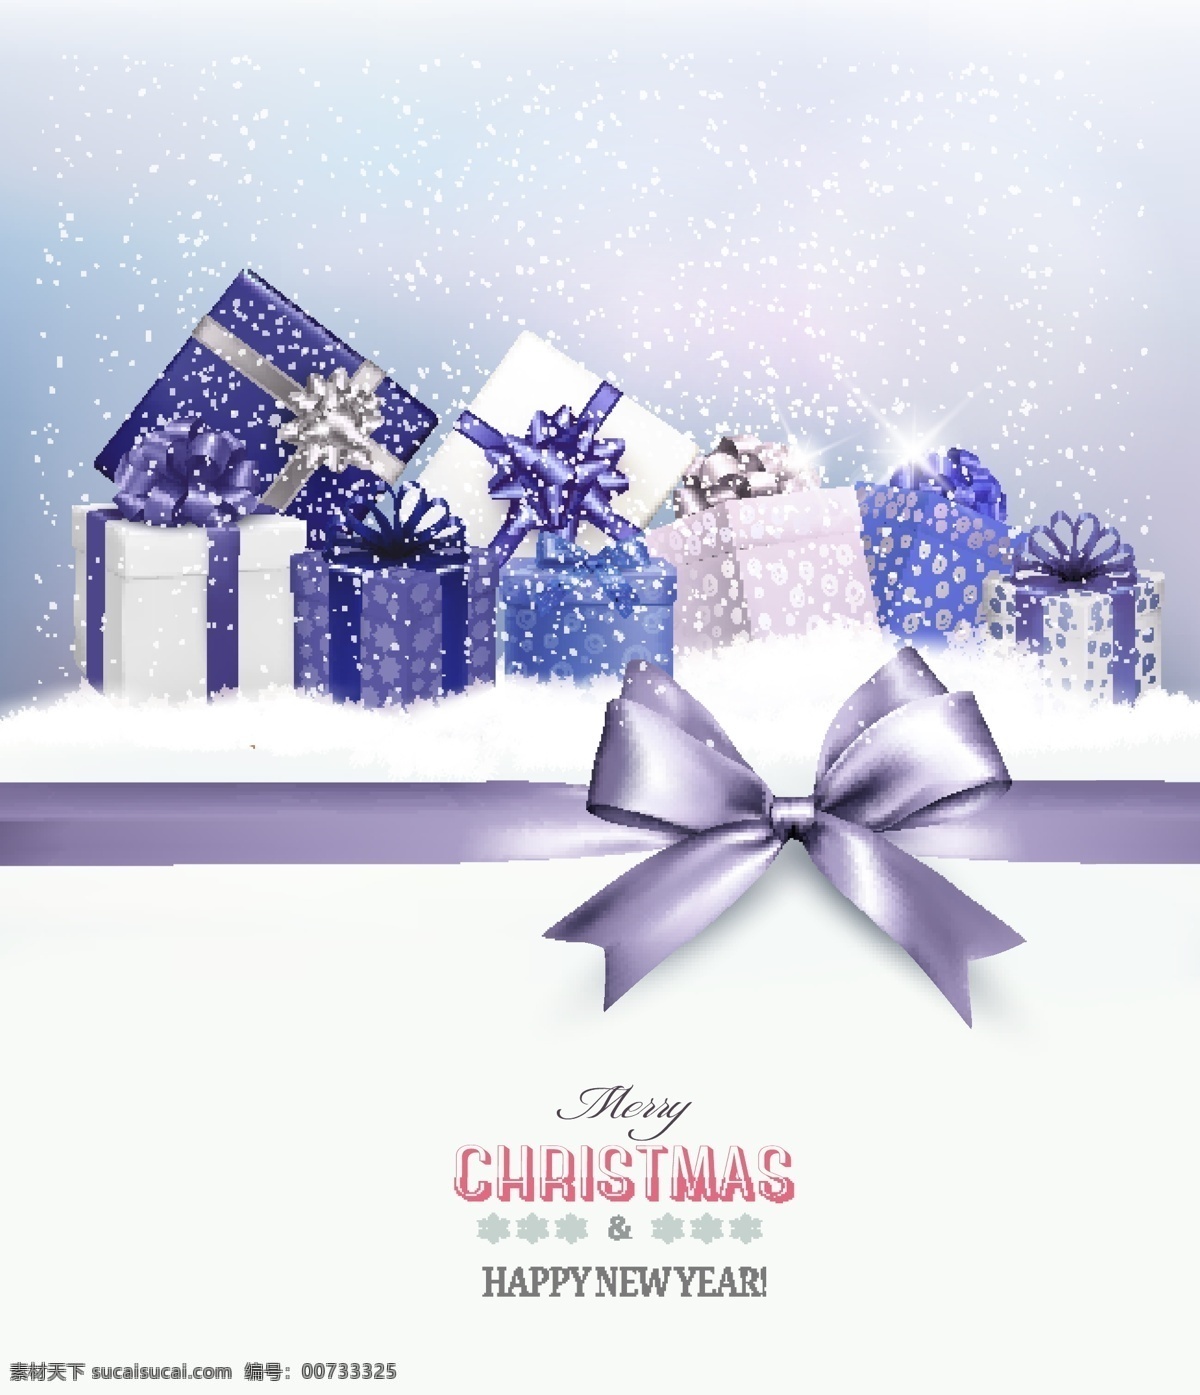 精美 紫色 礼盒 圣诞贺卡 矢量图 积雪 雪花 丝带 礼包 圣诞节 新年快乐 merry christmas 礼物 蝴蝶结